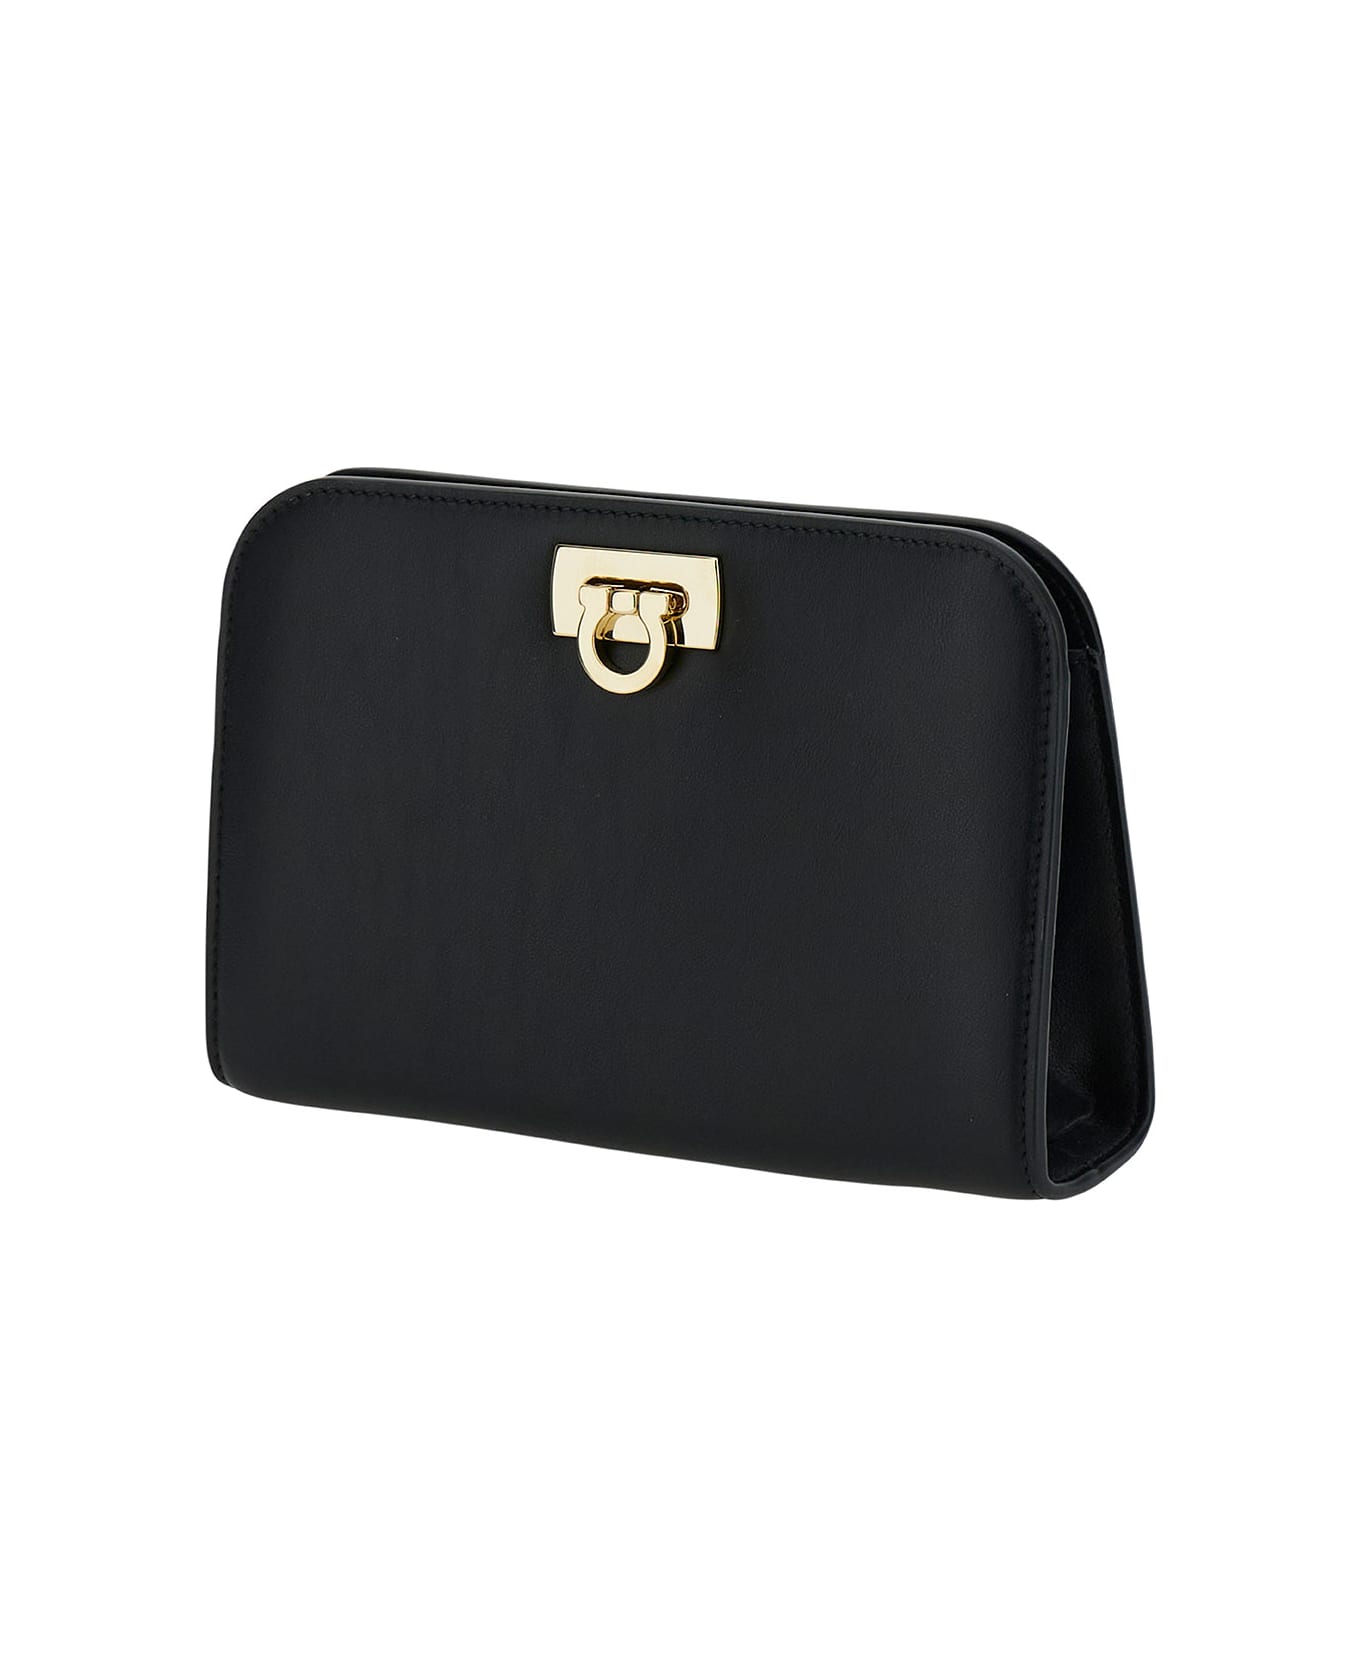 Ferragamo 'diana' Mini Clutch Bag In Black Calf Leather - Black